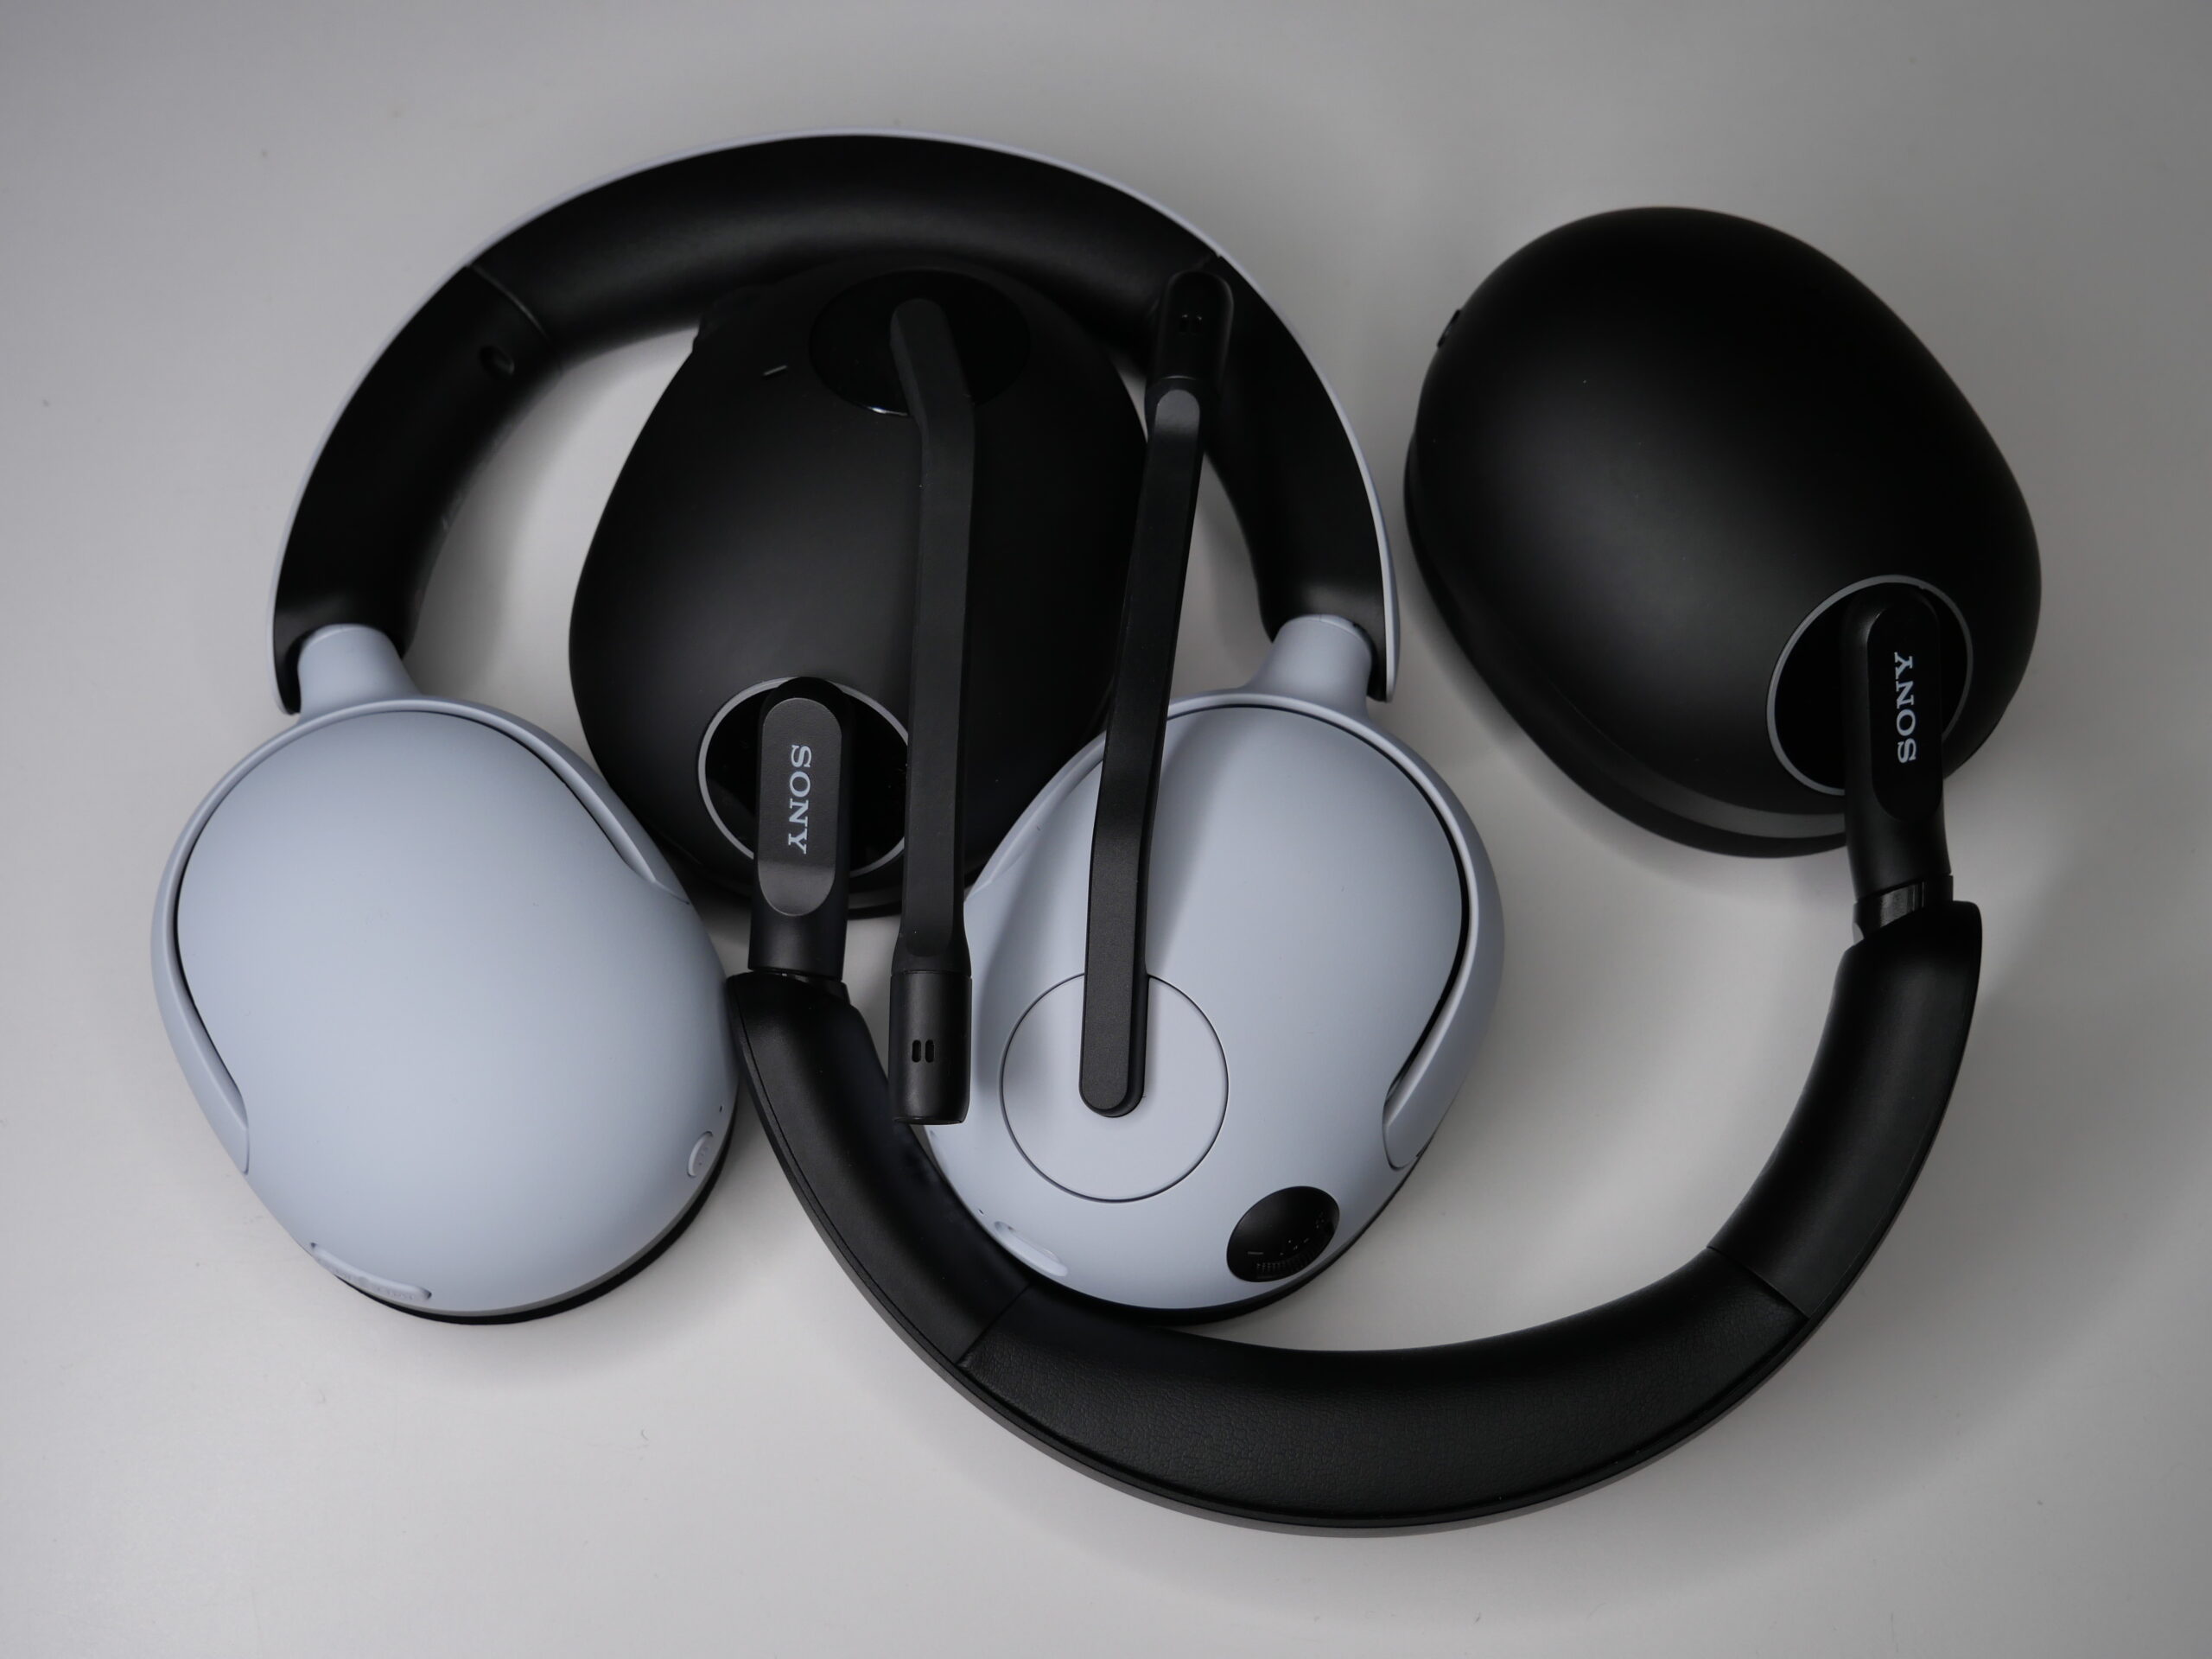 Czarne, bezprzewodowe słuchawki nauszne marki Sony z elementami w kolorze szarym.